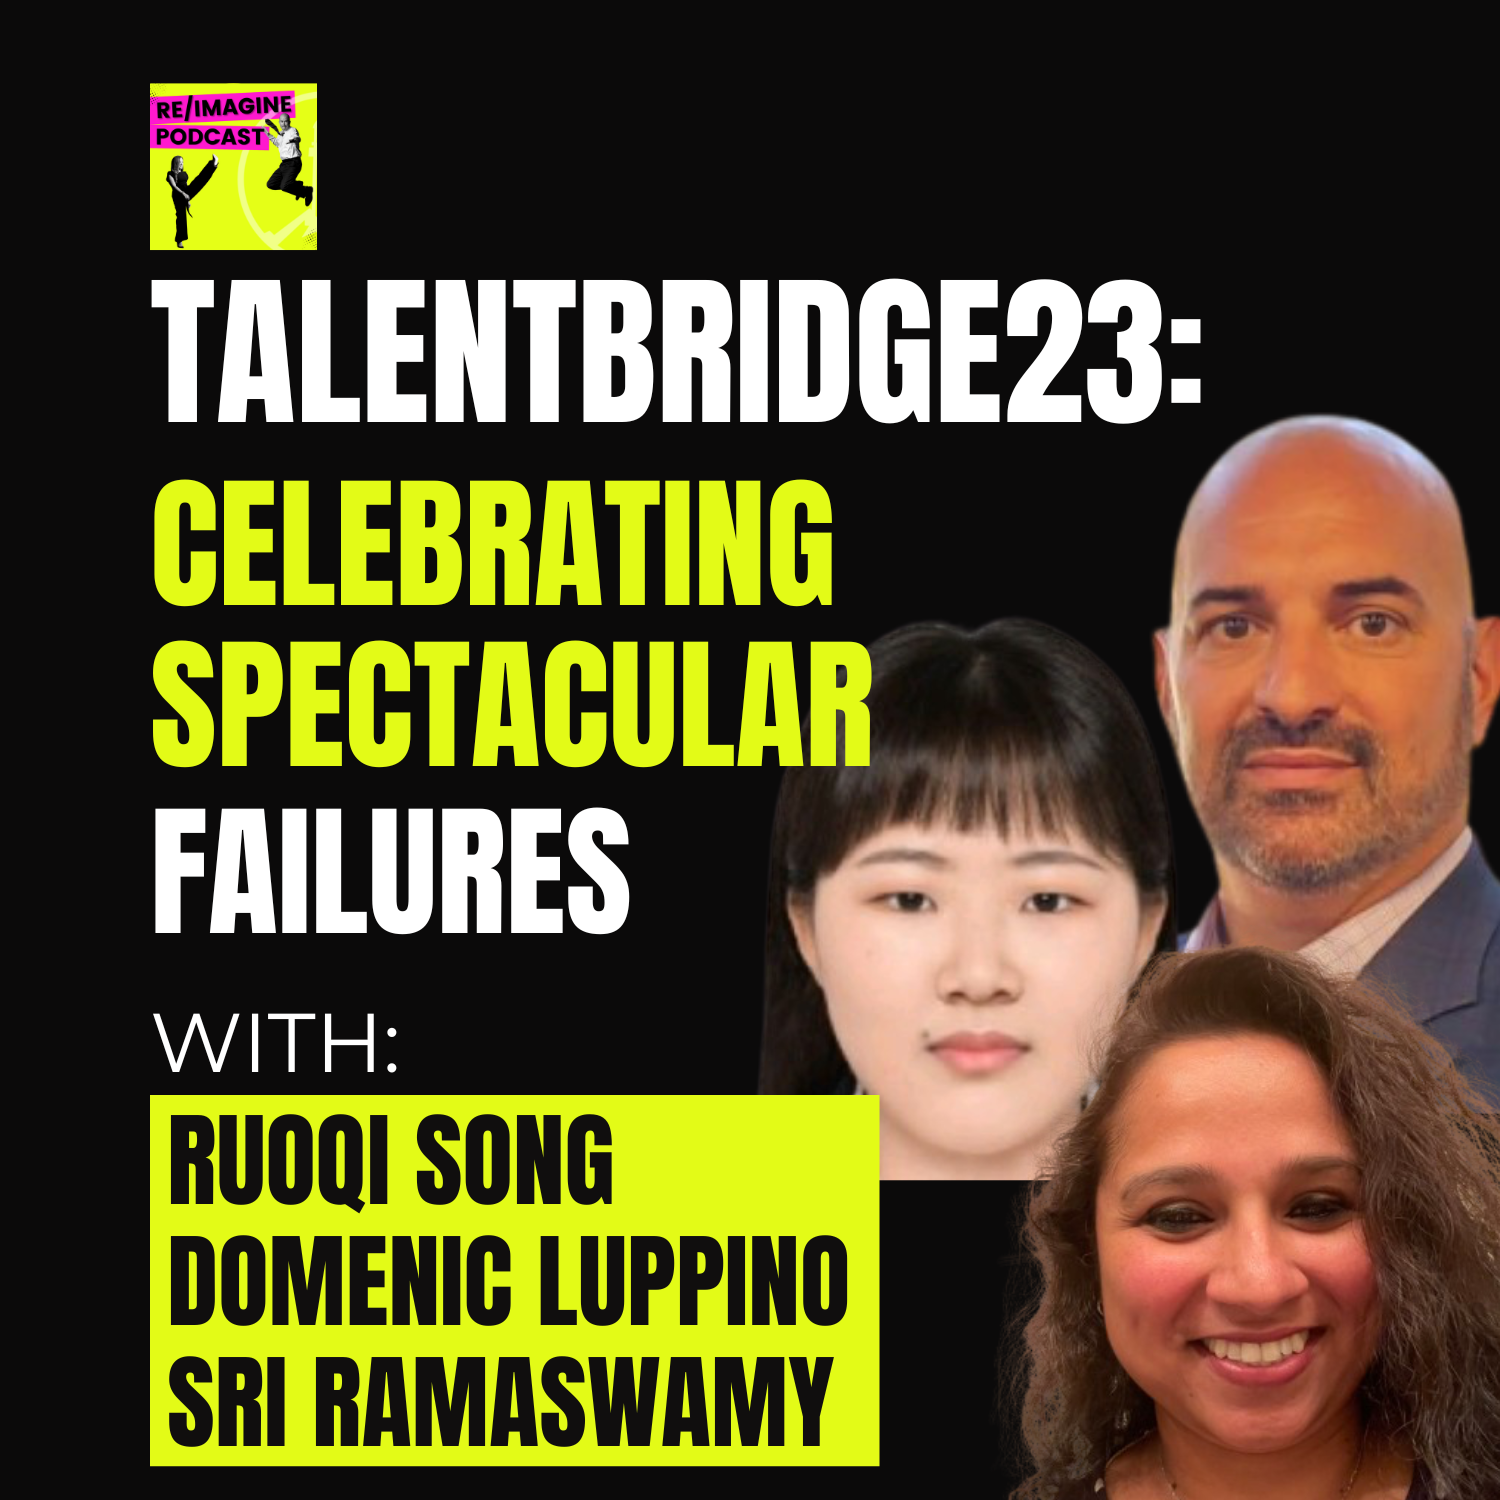 124 TalentBridge23: Celebrating Spectacular Failures